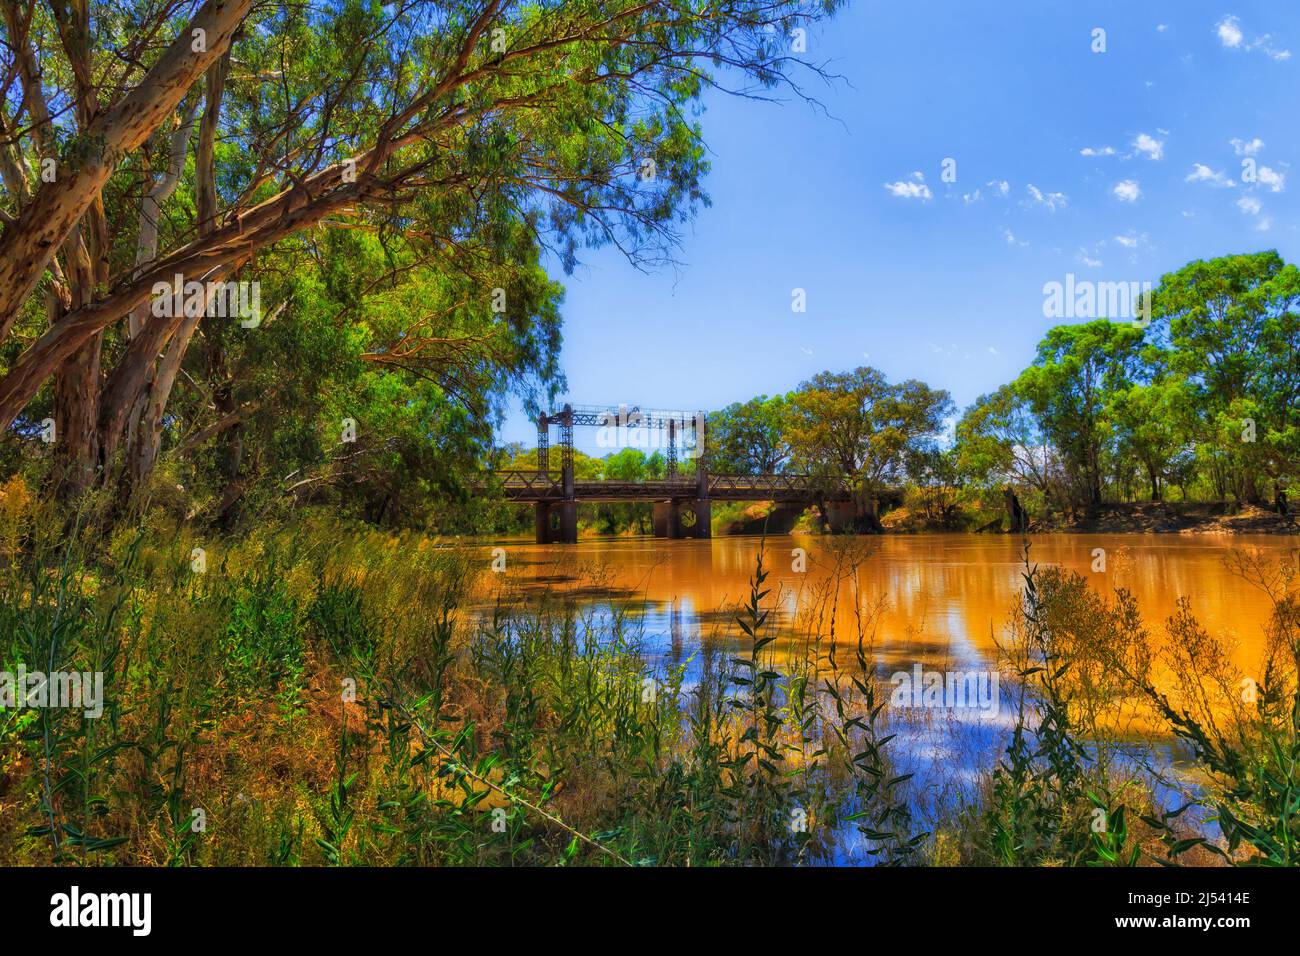 Barrier Highway attraverso il fiume Darling con ponte spit nella città di WIlcannia al di fuori del parco Baker. Foto Stock